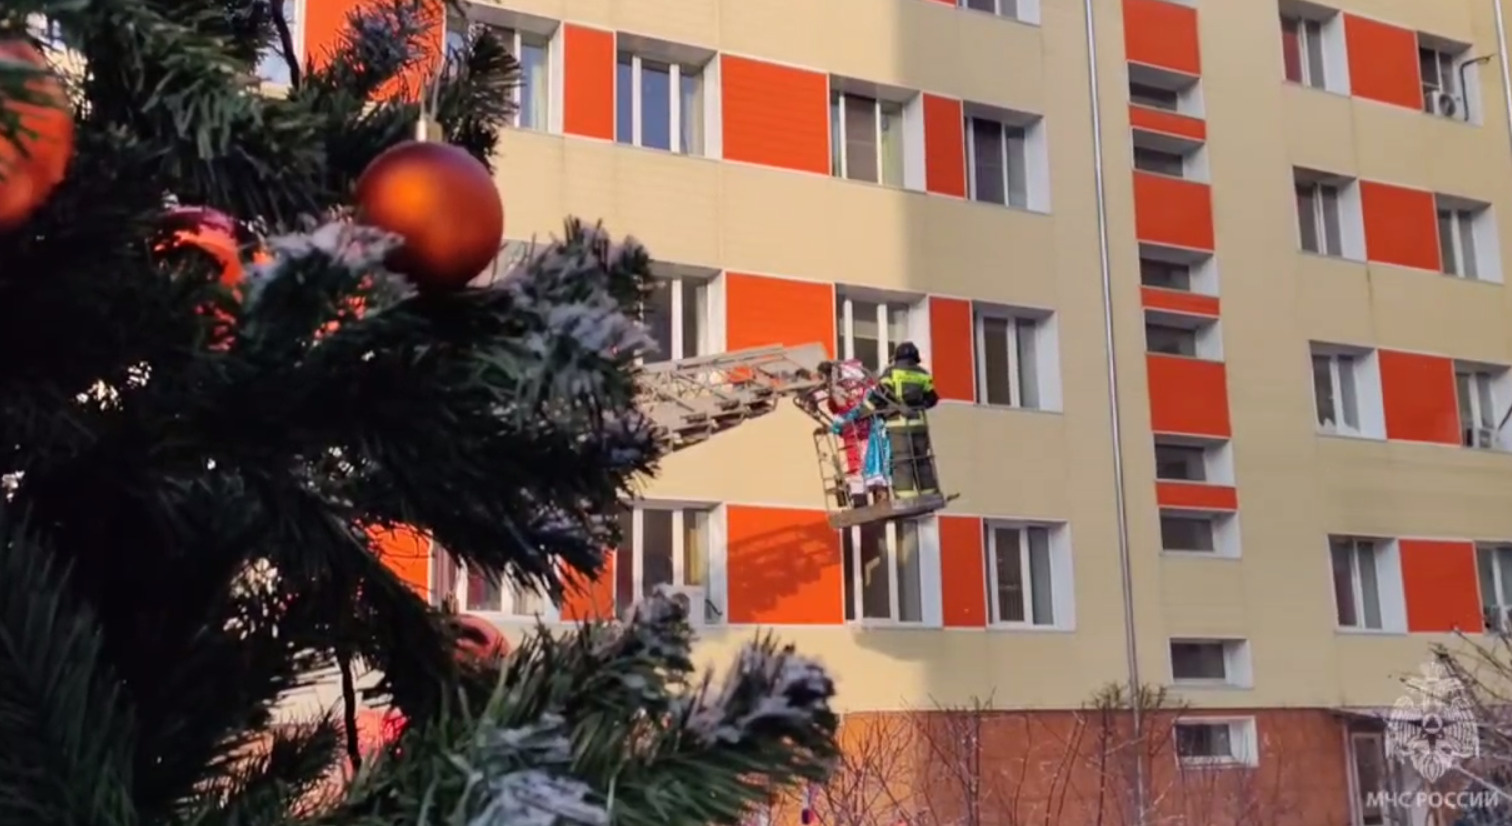 Дед Мороз и Снегурочка поздравили детей в онкодиспансере Забайкалья с Новым годом